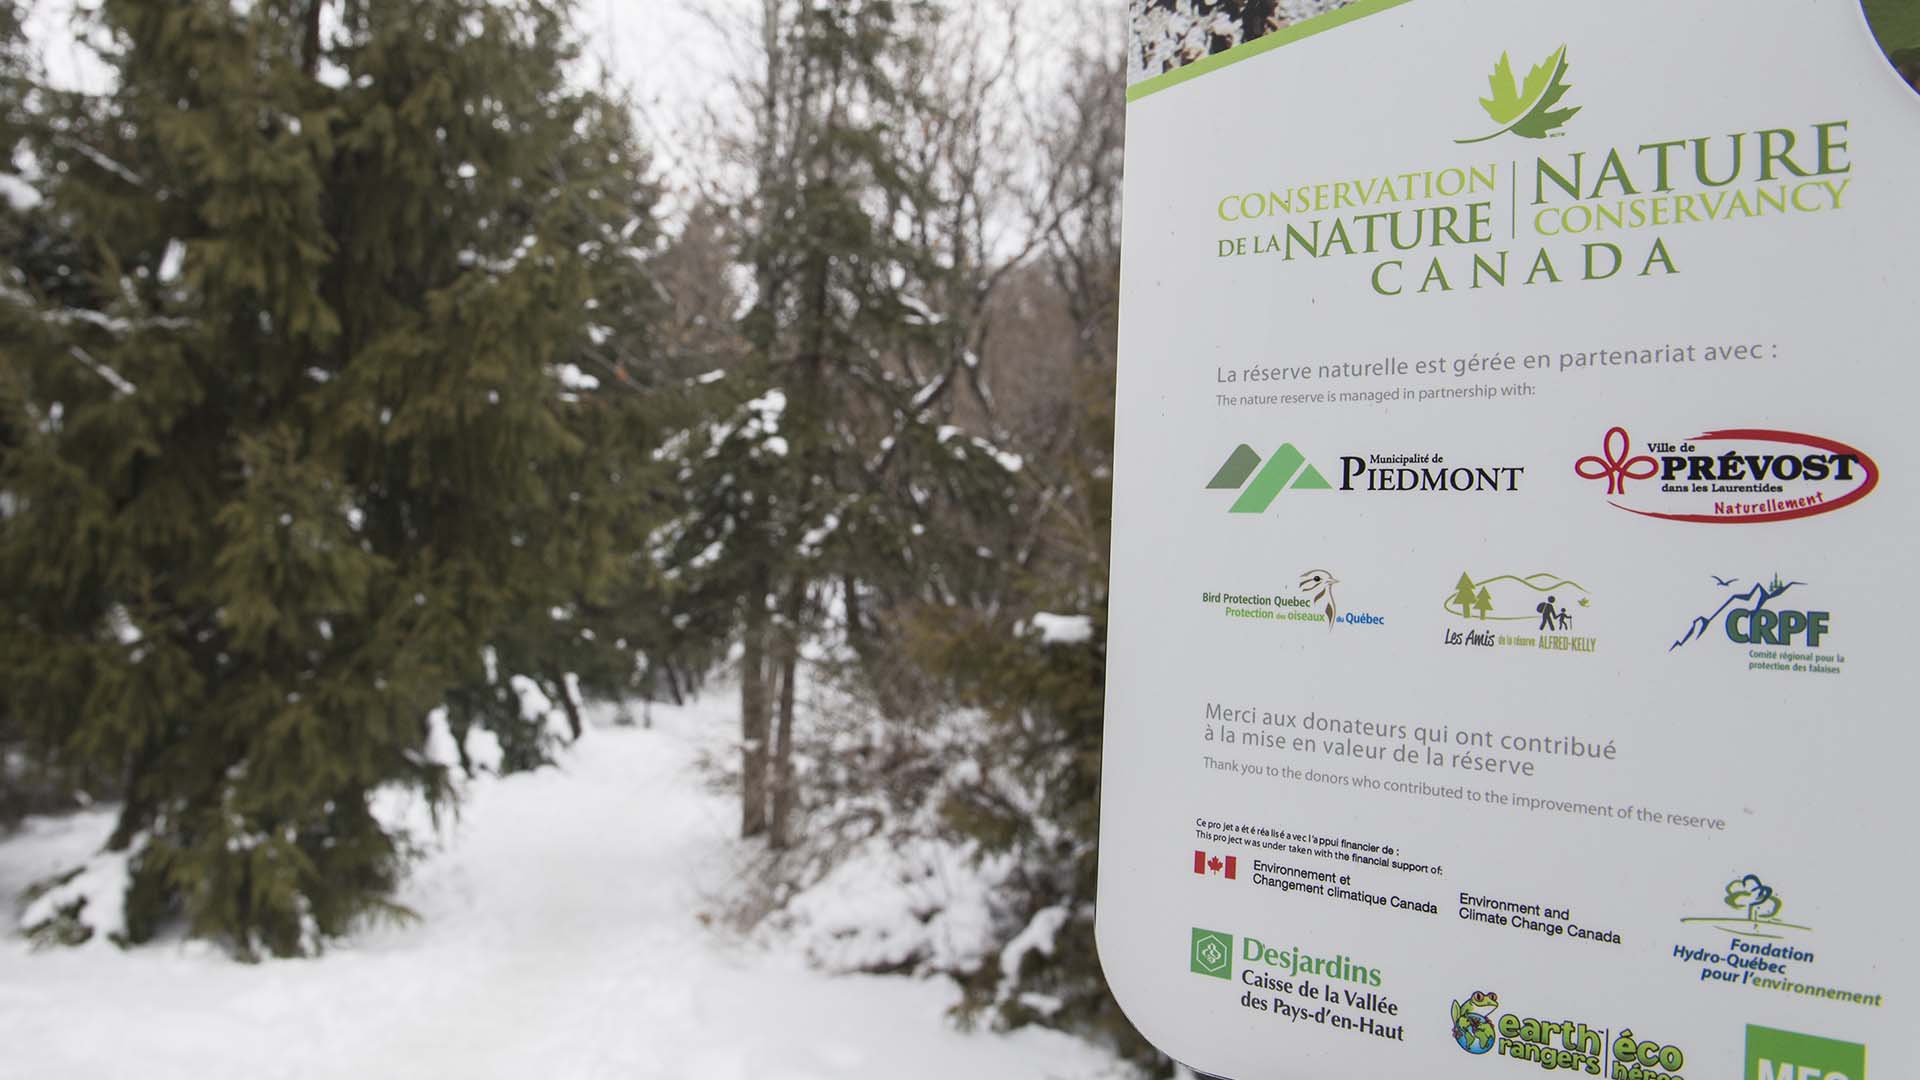 Conservation de la nature Canada choisi pour accueillir une rencontre internationale d’envergure  en 2024.